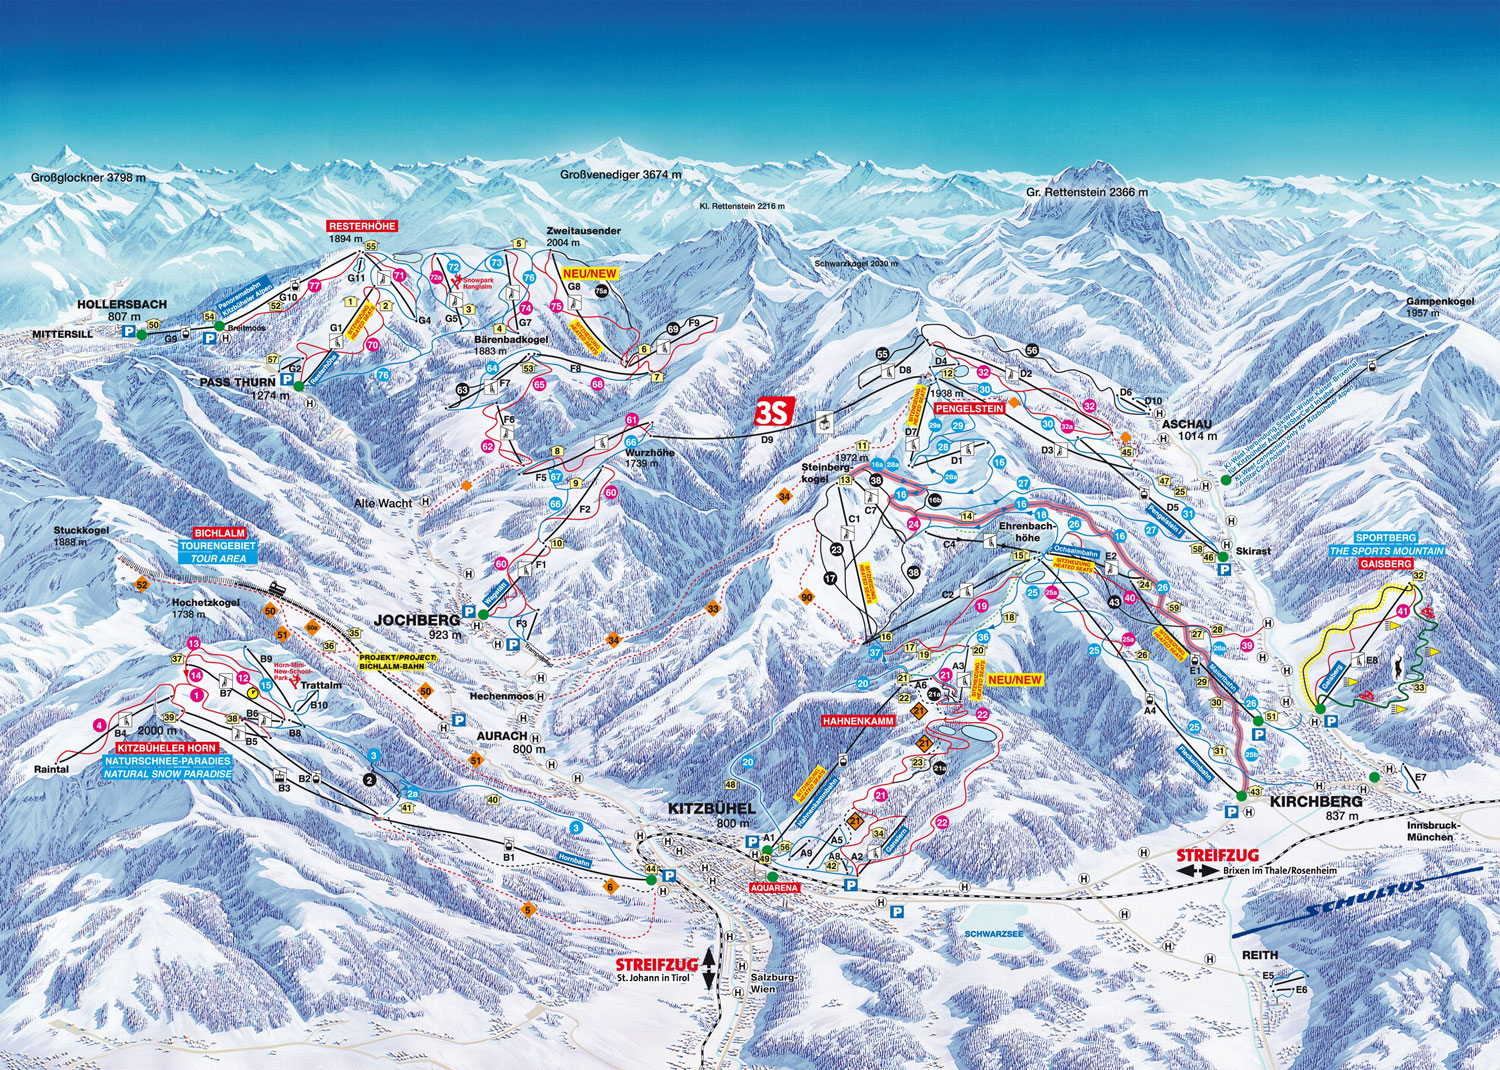 Pistenplan Kitzbühel im Skigebiet Kitzbühel - ein Skigebiet in Tirol